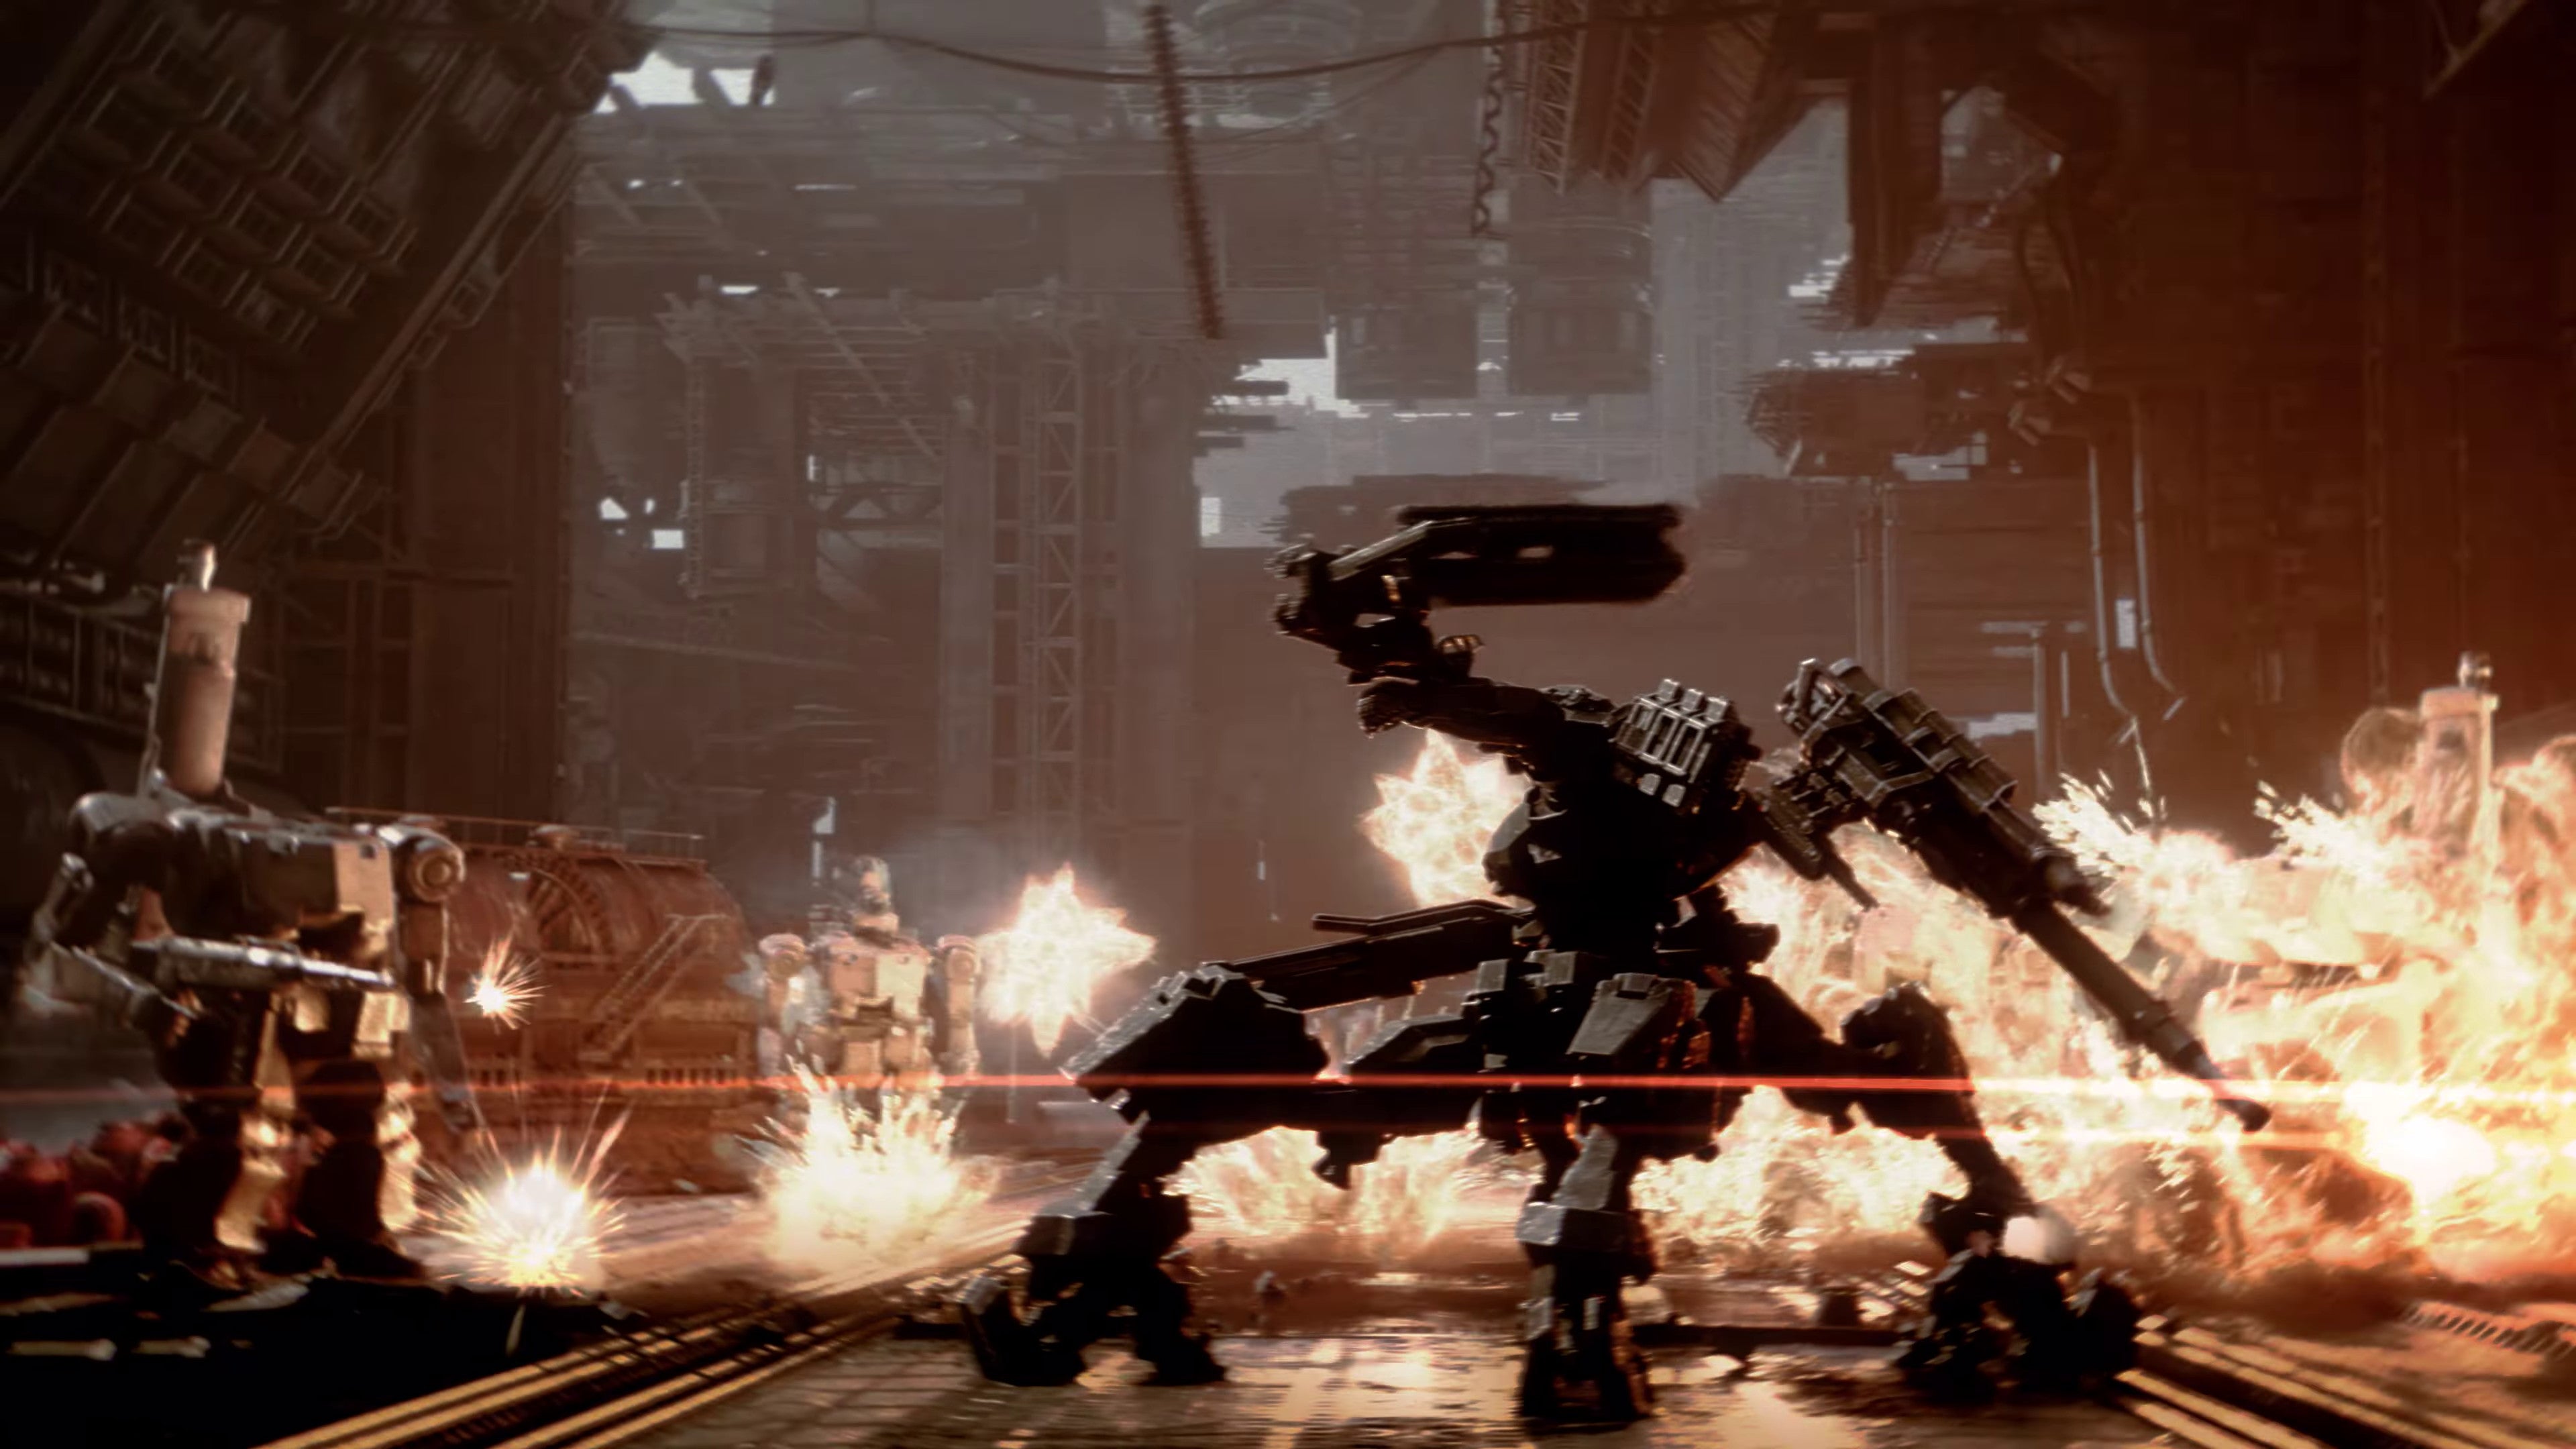 Крутой Мех В Анонсированном Трейлере Armored Core Vi: Fires Of Rubicon.